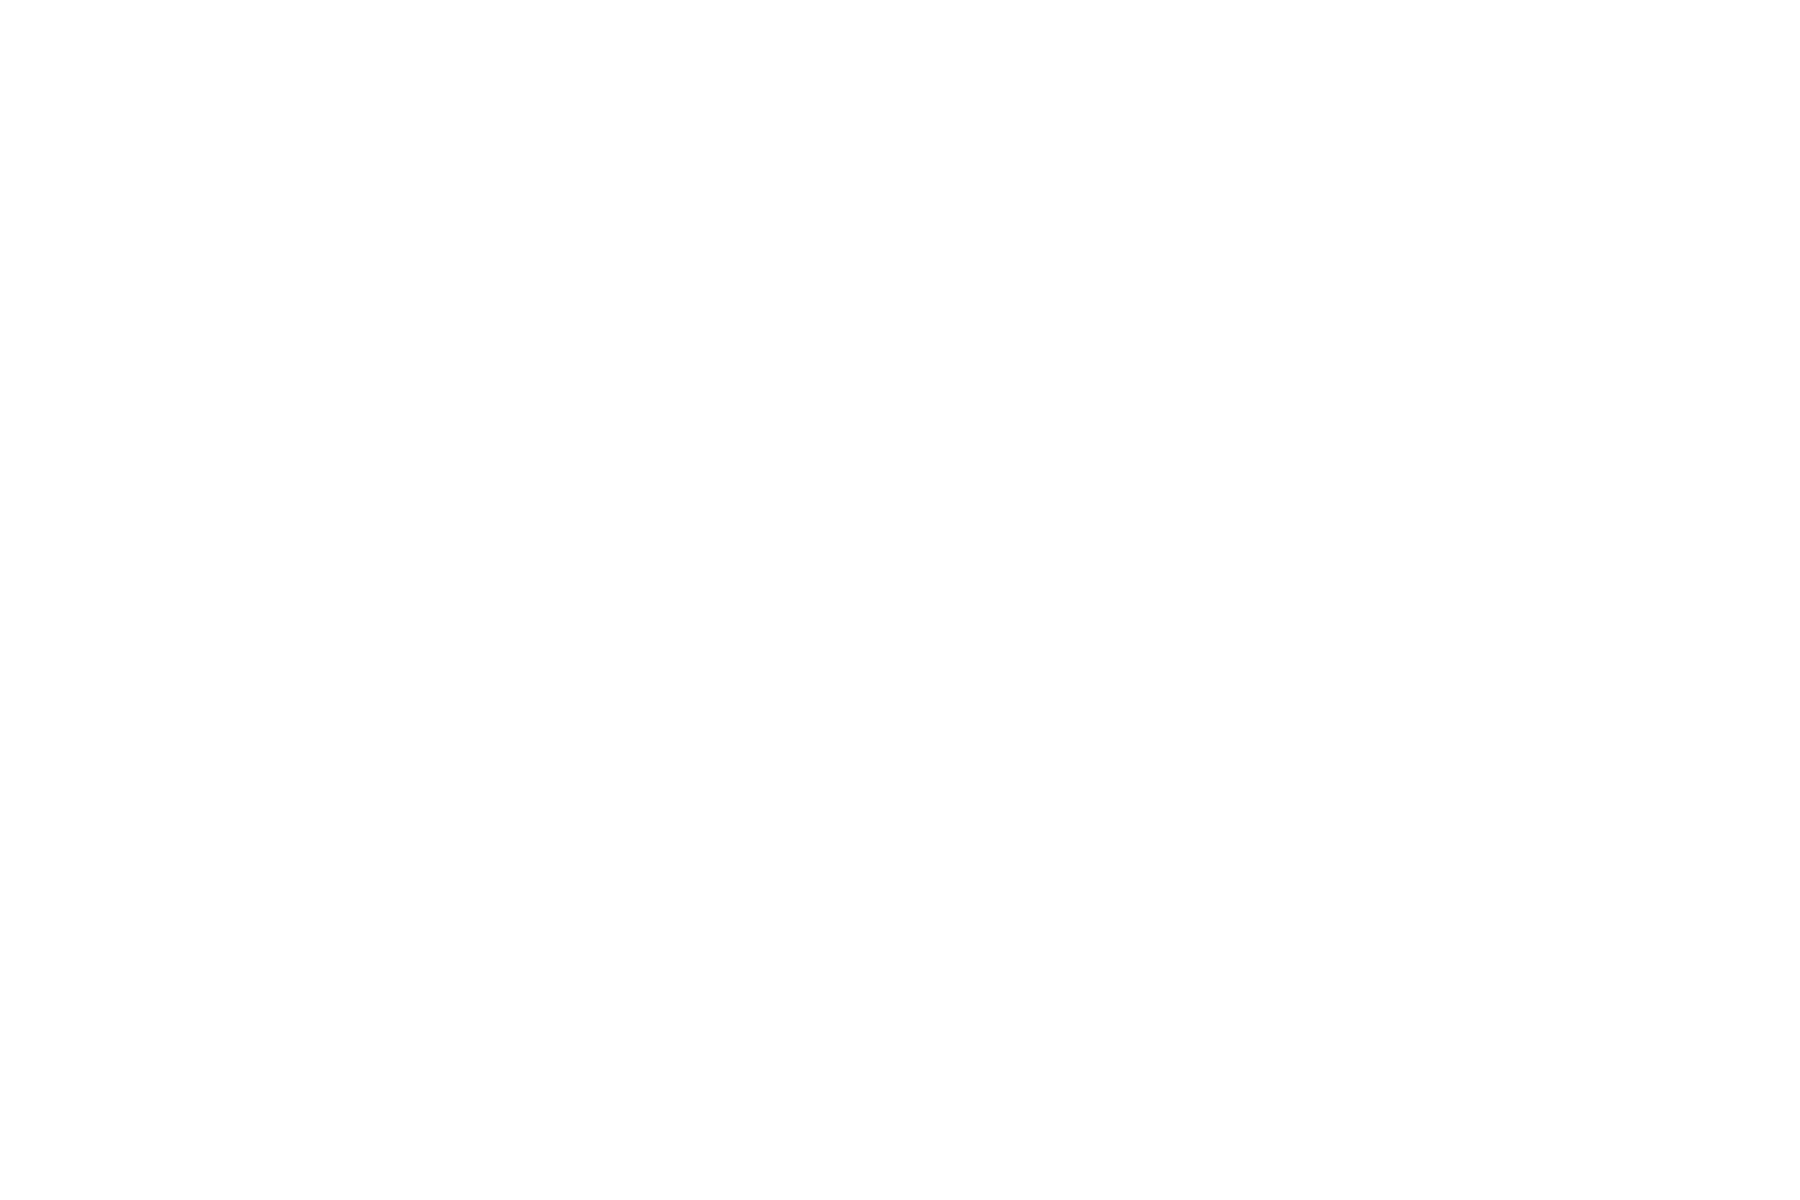 Arise Assembly of God, an Assemblies of God (AG) church